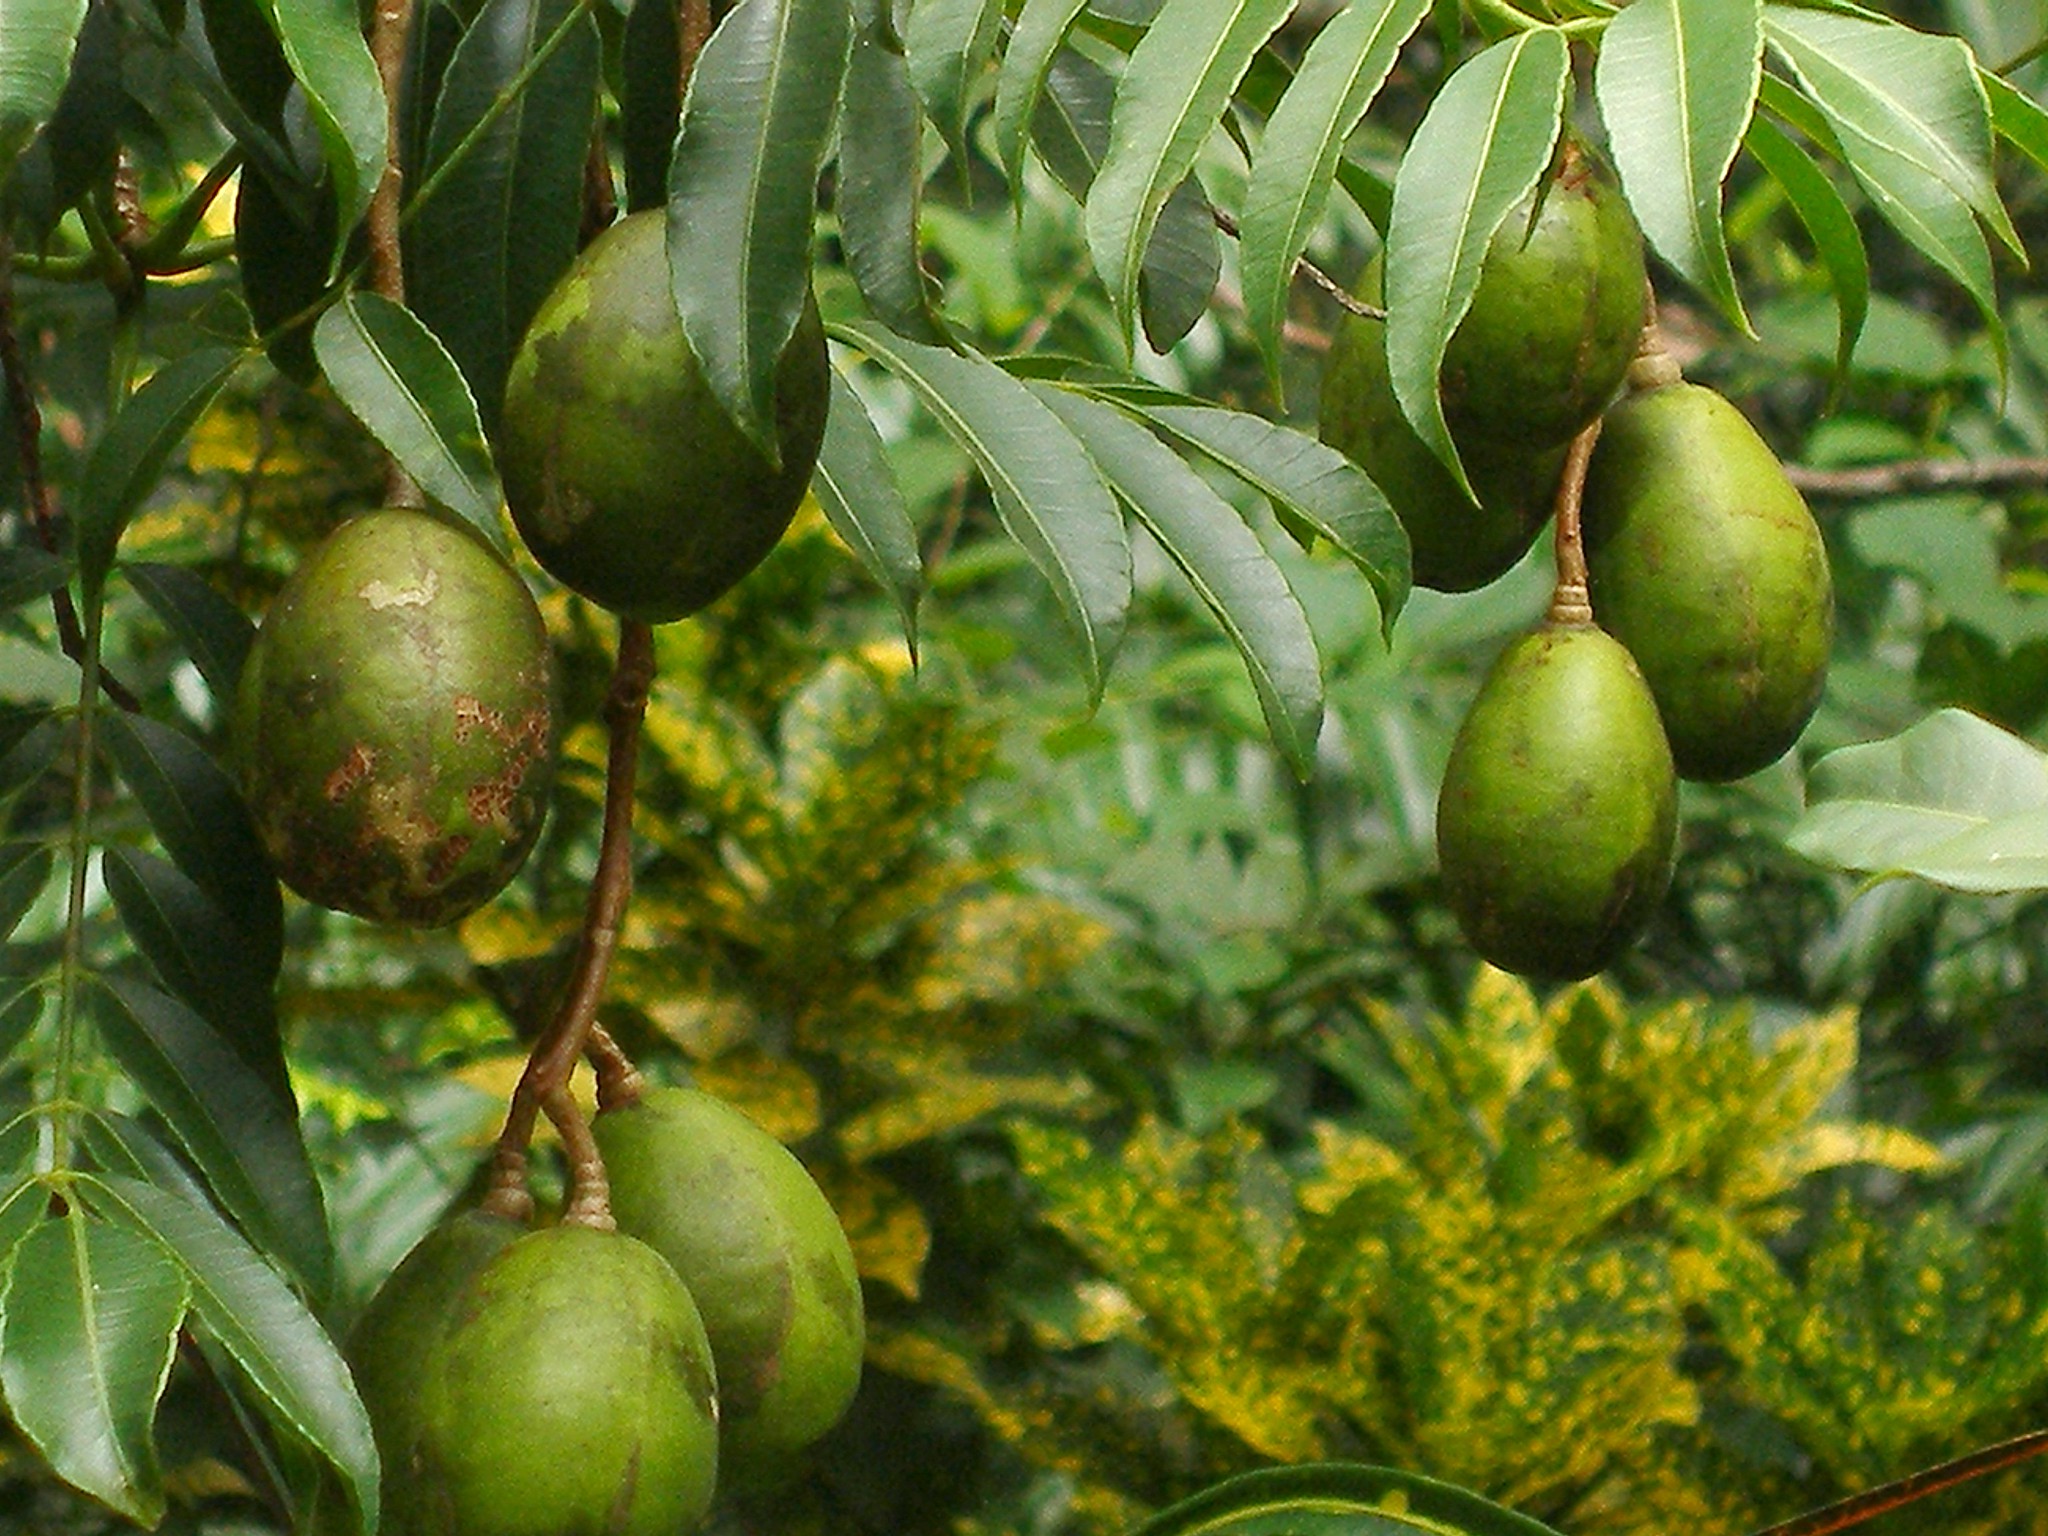 Hãy cùng tìm hiểu về loại trái cây đặc sản đất nước Indonesia